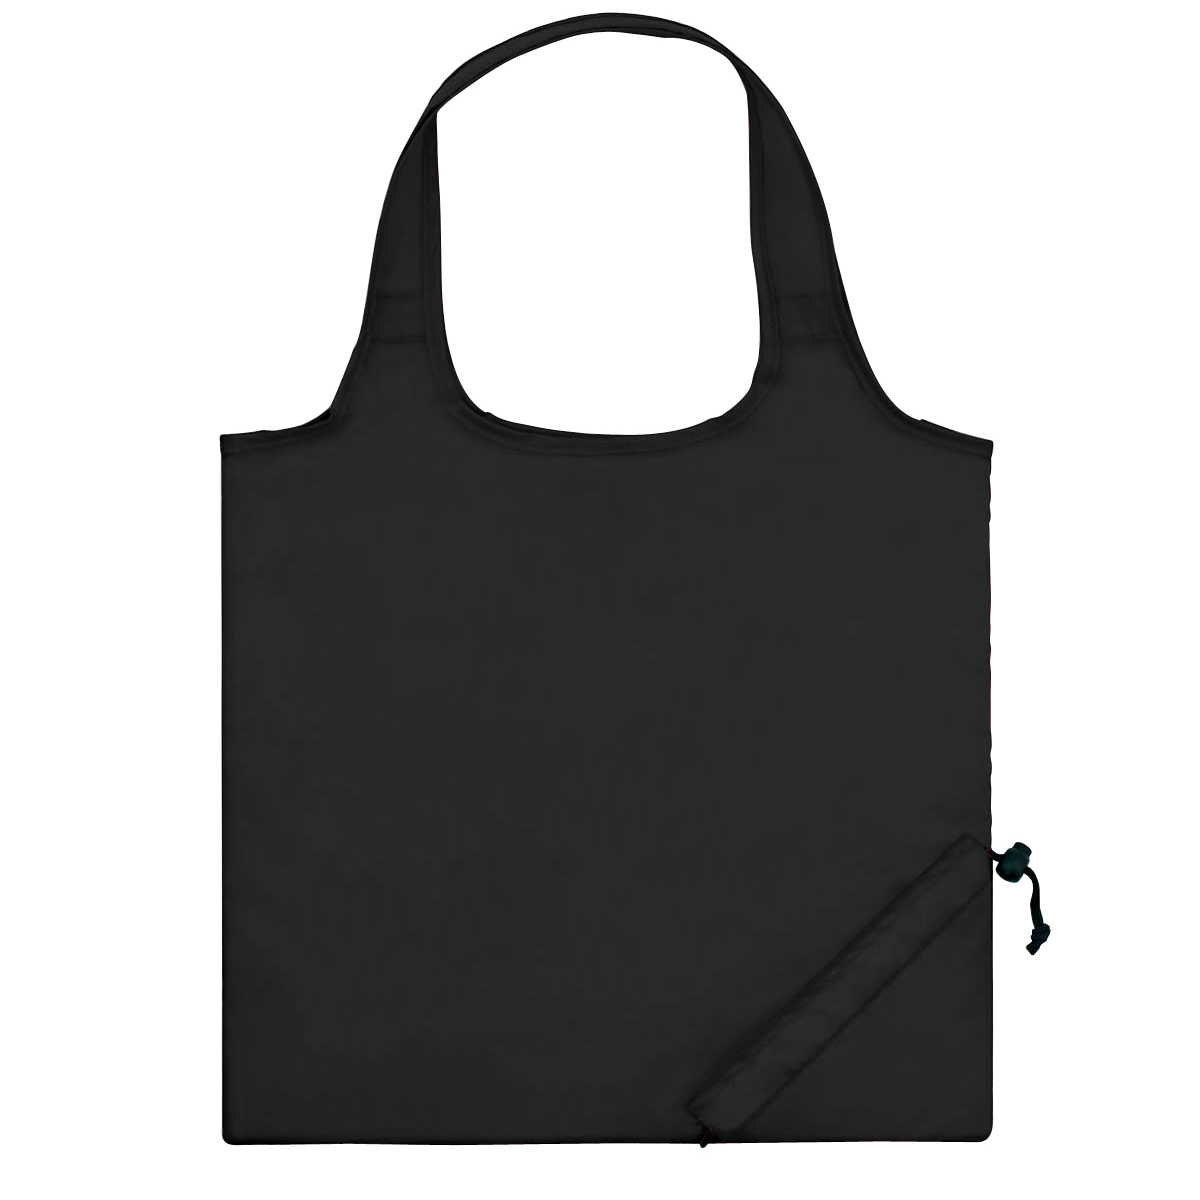 Black Foldaway Tote Bag 